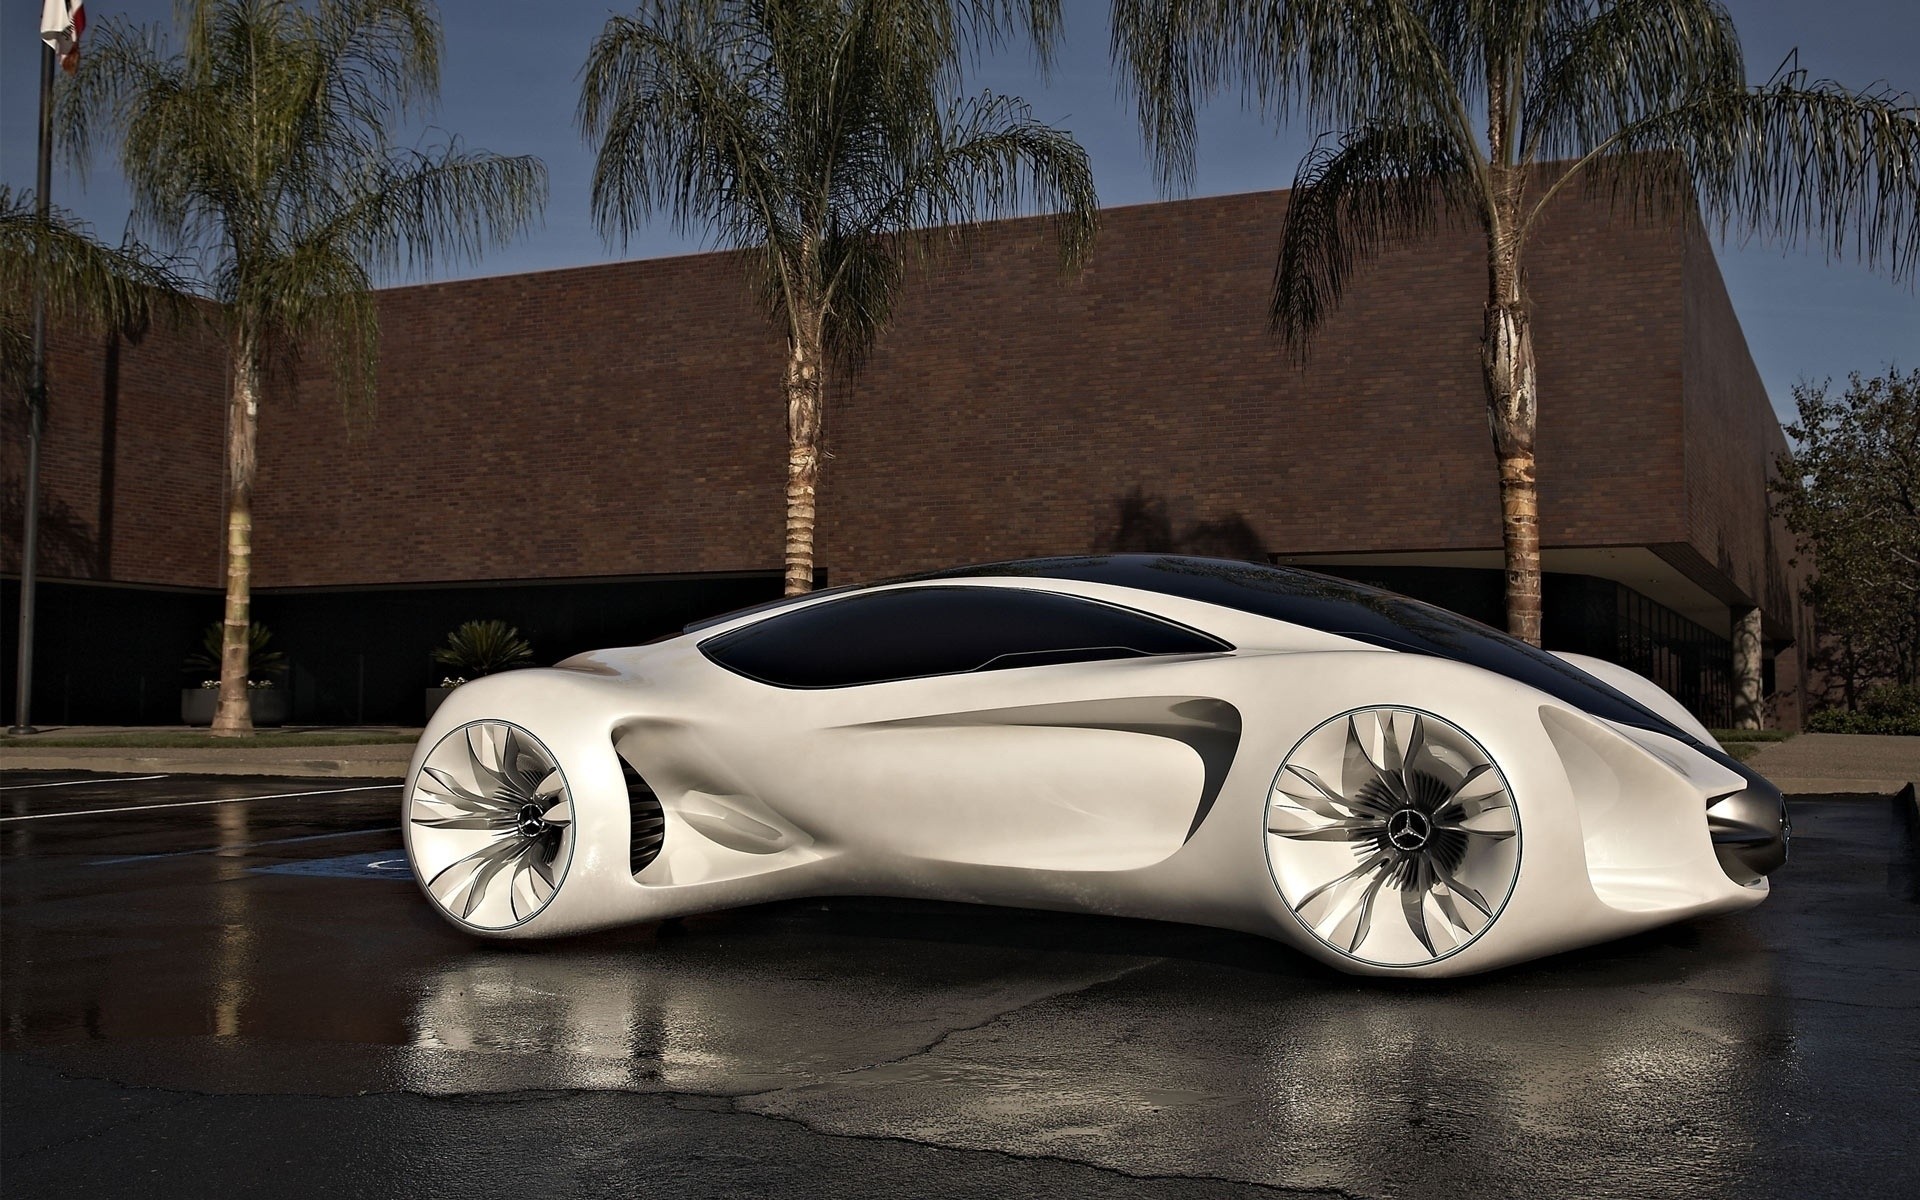 mercedes-benz автомобиль автомобиль транспортная система тротуар путешествия колеса роскошные дорога будущее дизайн эко горячая